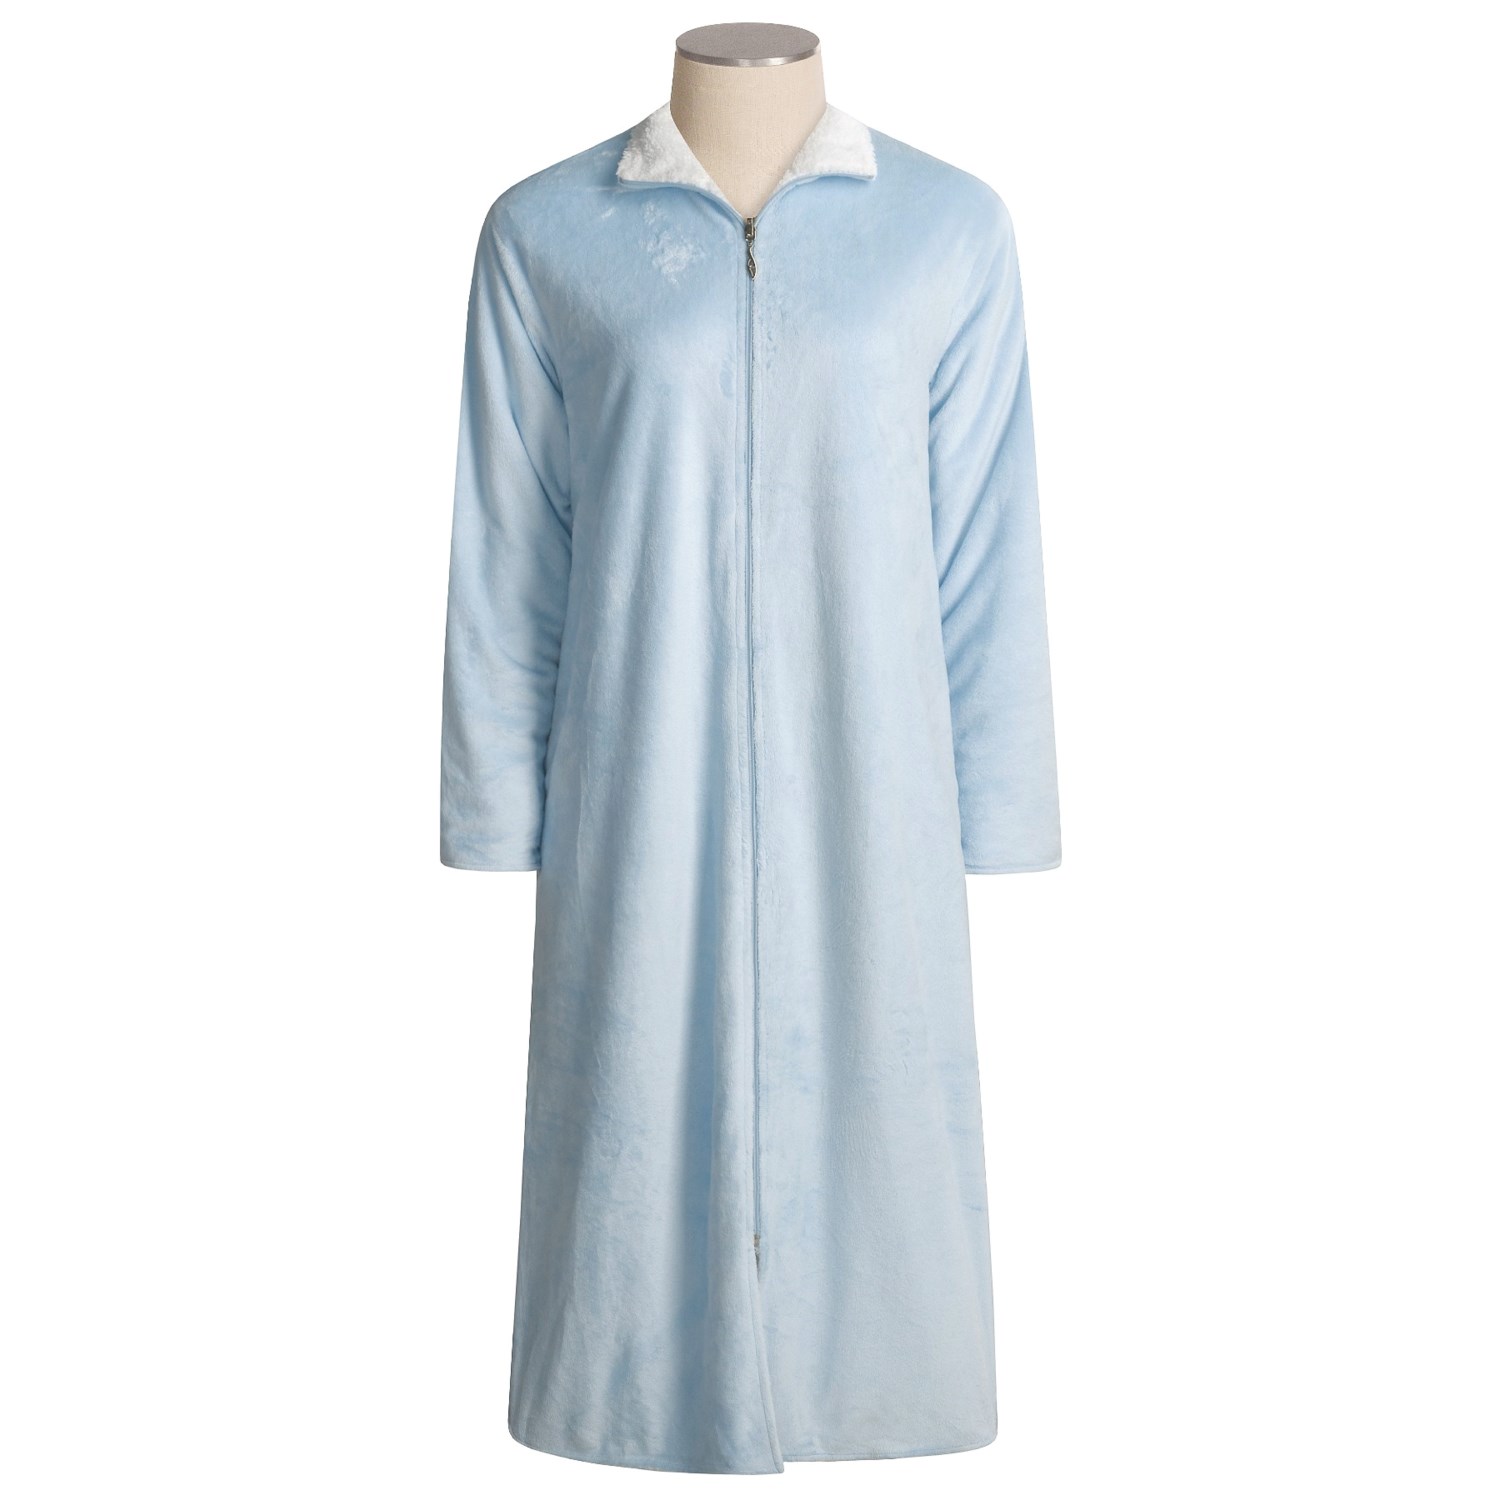 Paddi Murphy Plush Robe (For Women) 1821U - Save 49%